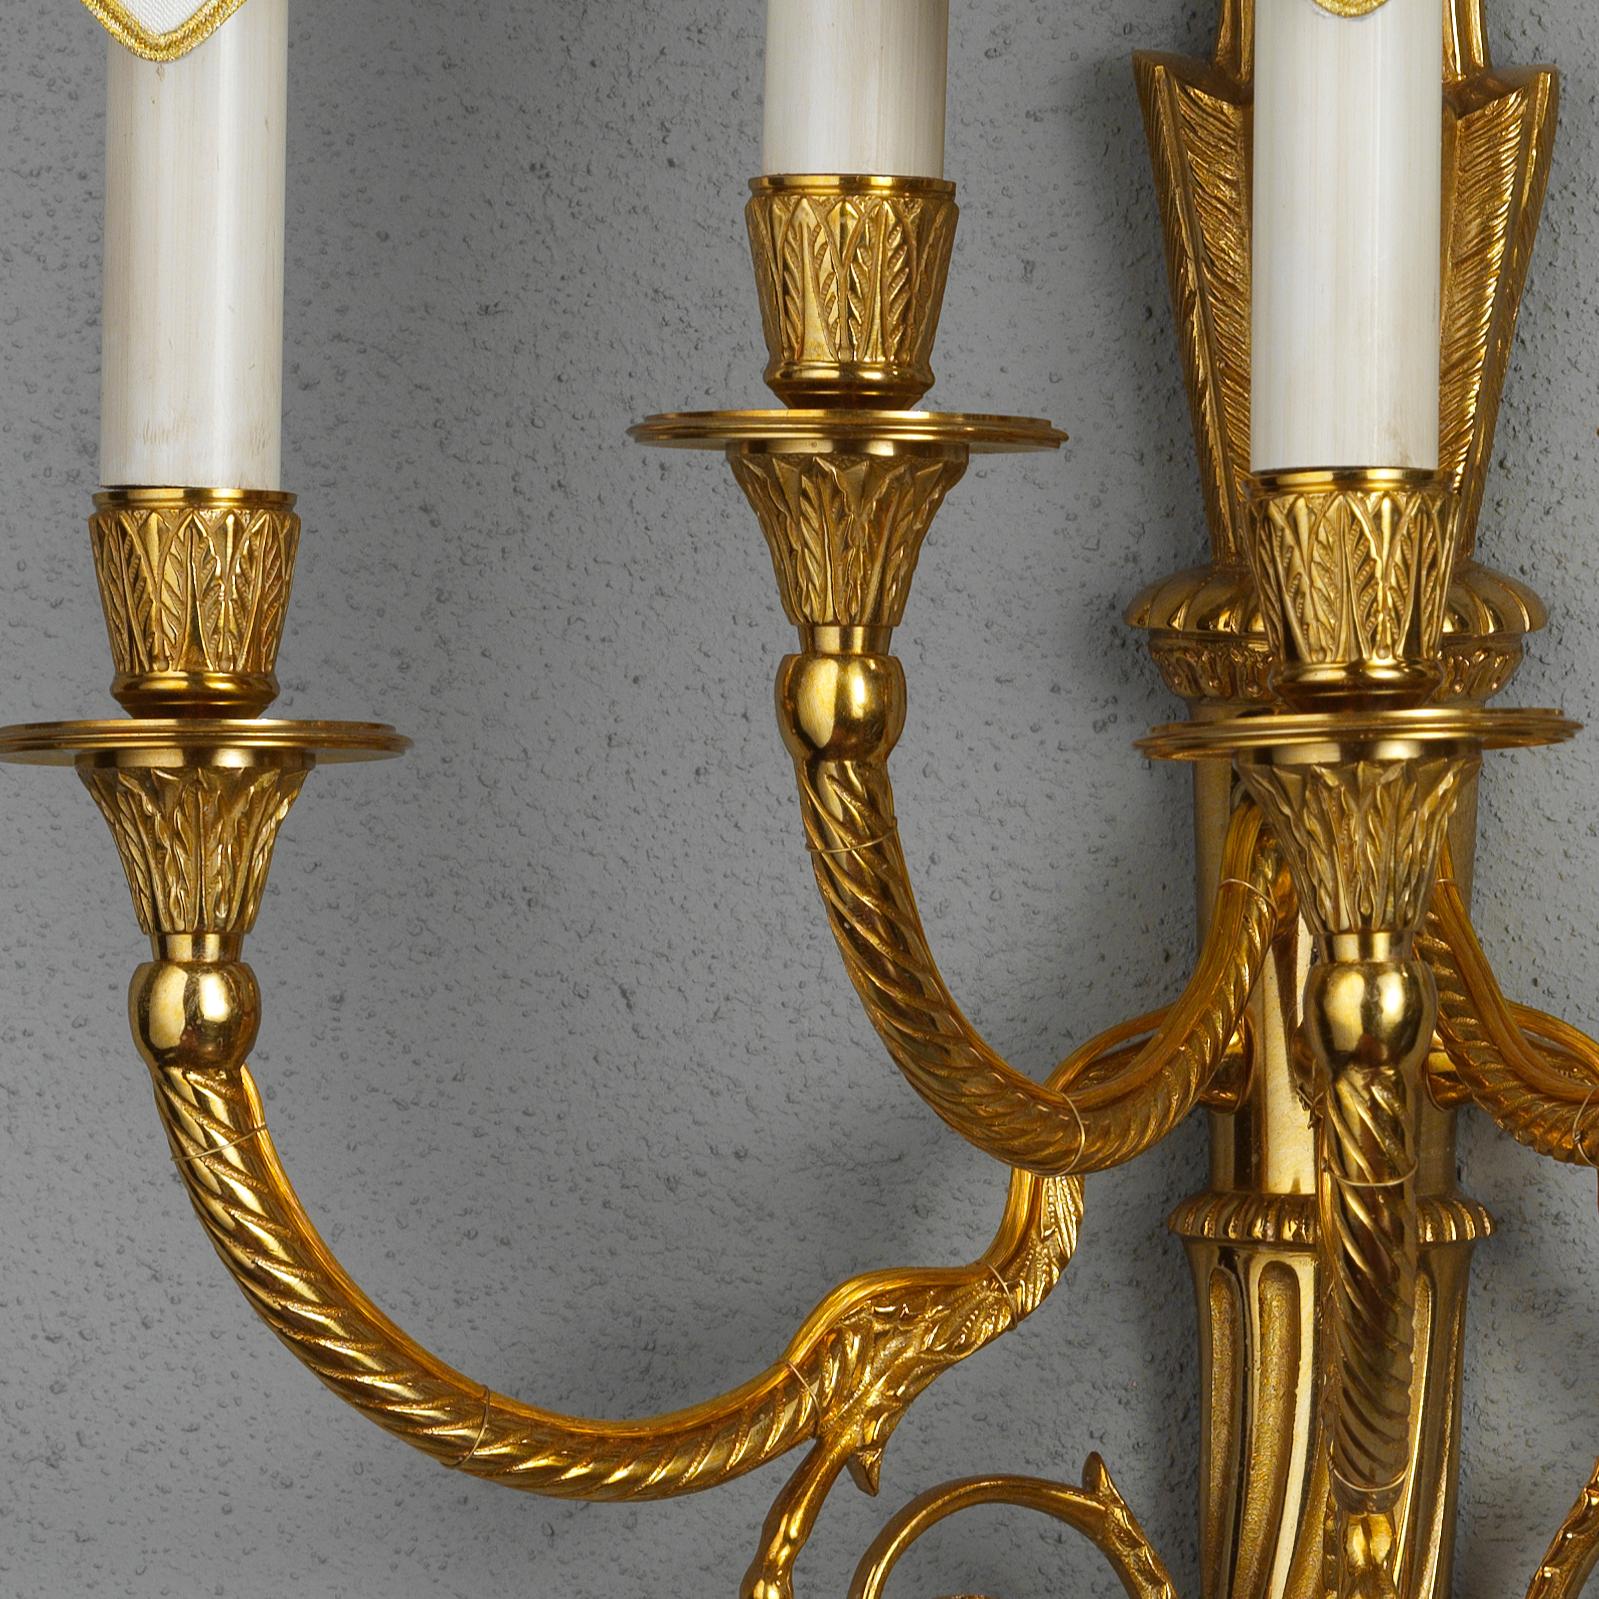 Diese elegante fünfflammige Wandleuchte im Louis-XVI-Stil von Gherardo Degli Albizzi zeichnet sich durch viele hochwertige, handgemeißelte Details aus. Oben befindet sich eine Quaste, ein typisches Element aus der Zeit Ludwigs XVI., und unten ein